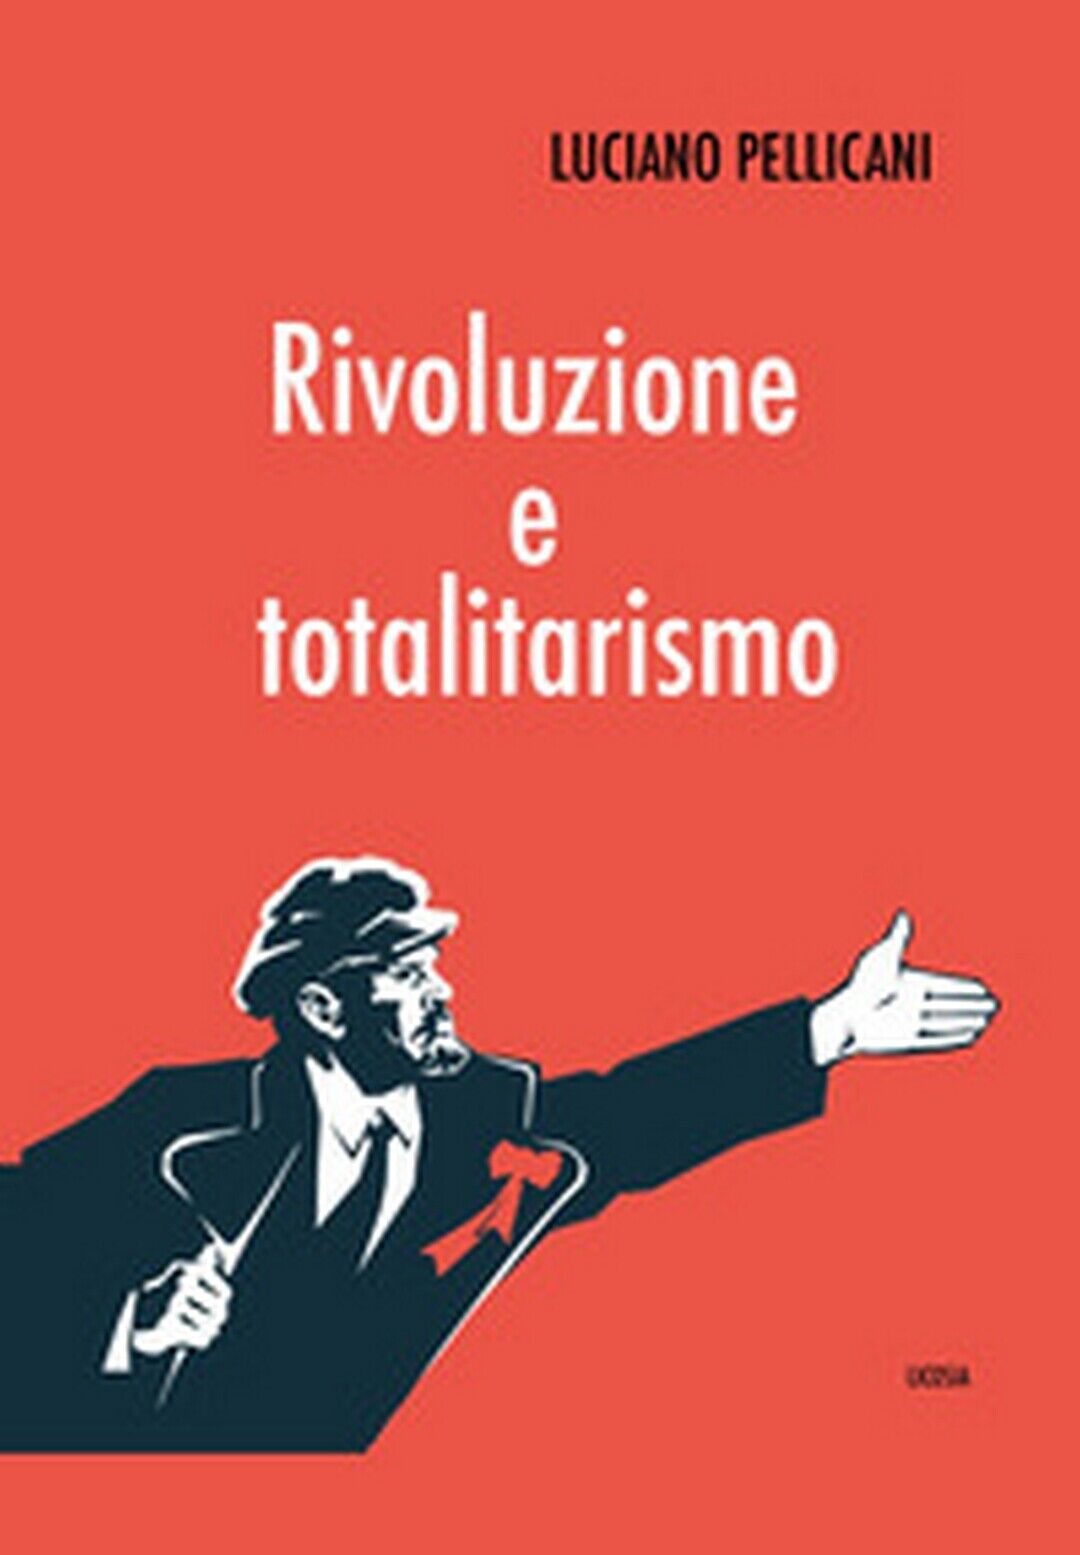 Rivoluzione e totalitarismo  di Luciano Pellicani,  2020,  Licosia